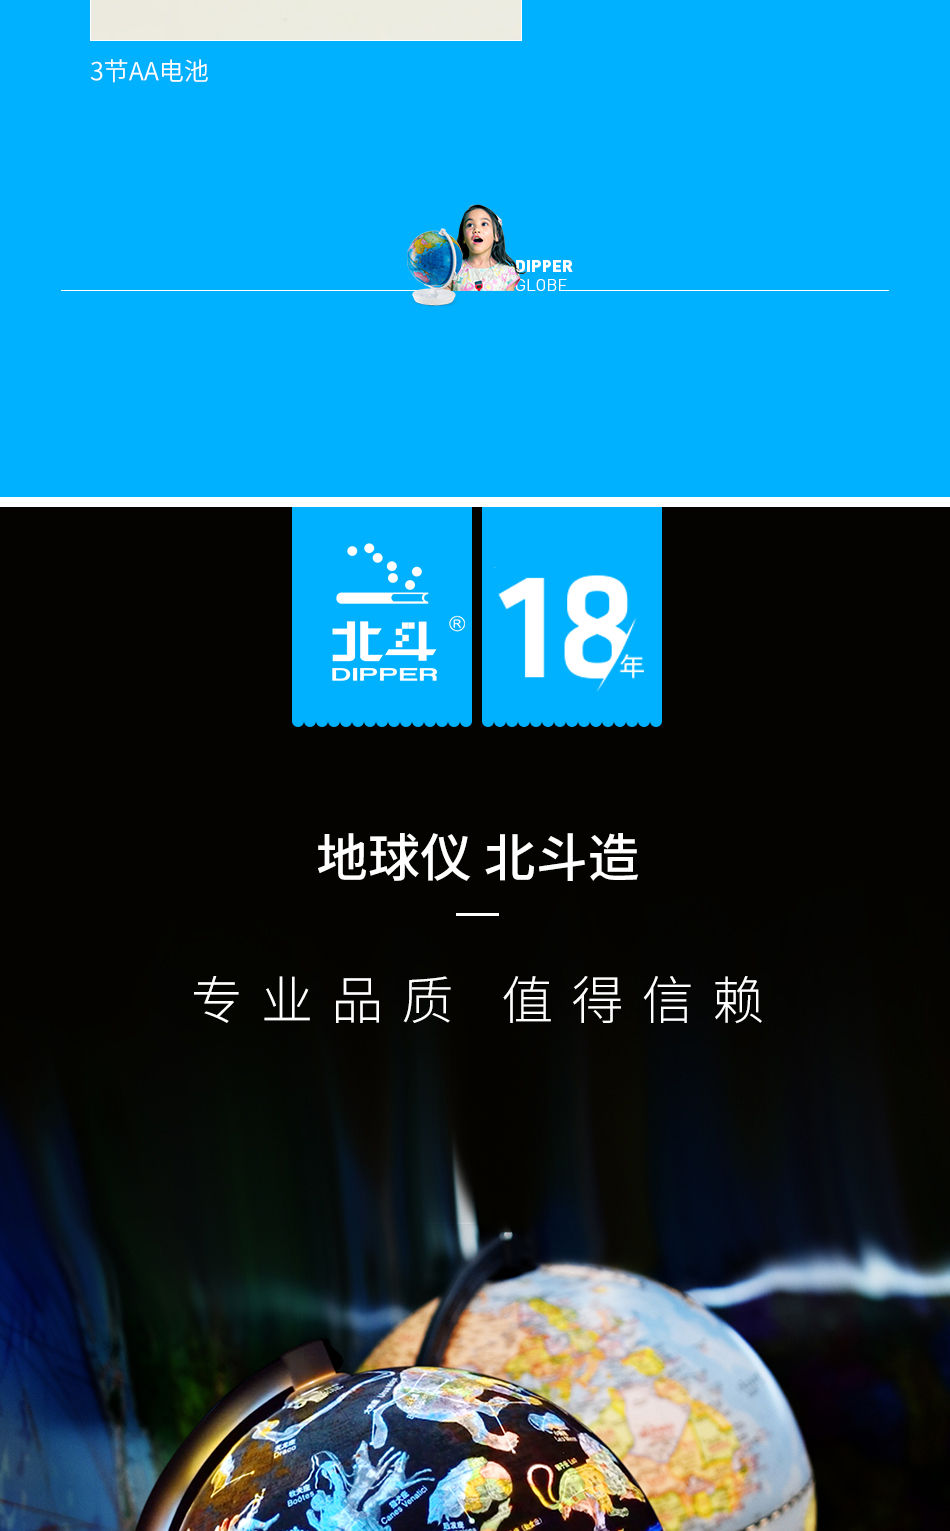 米乐|米乐·M6(China)官方网站_公司9719